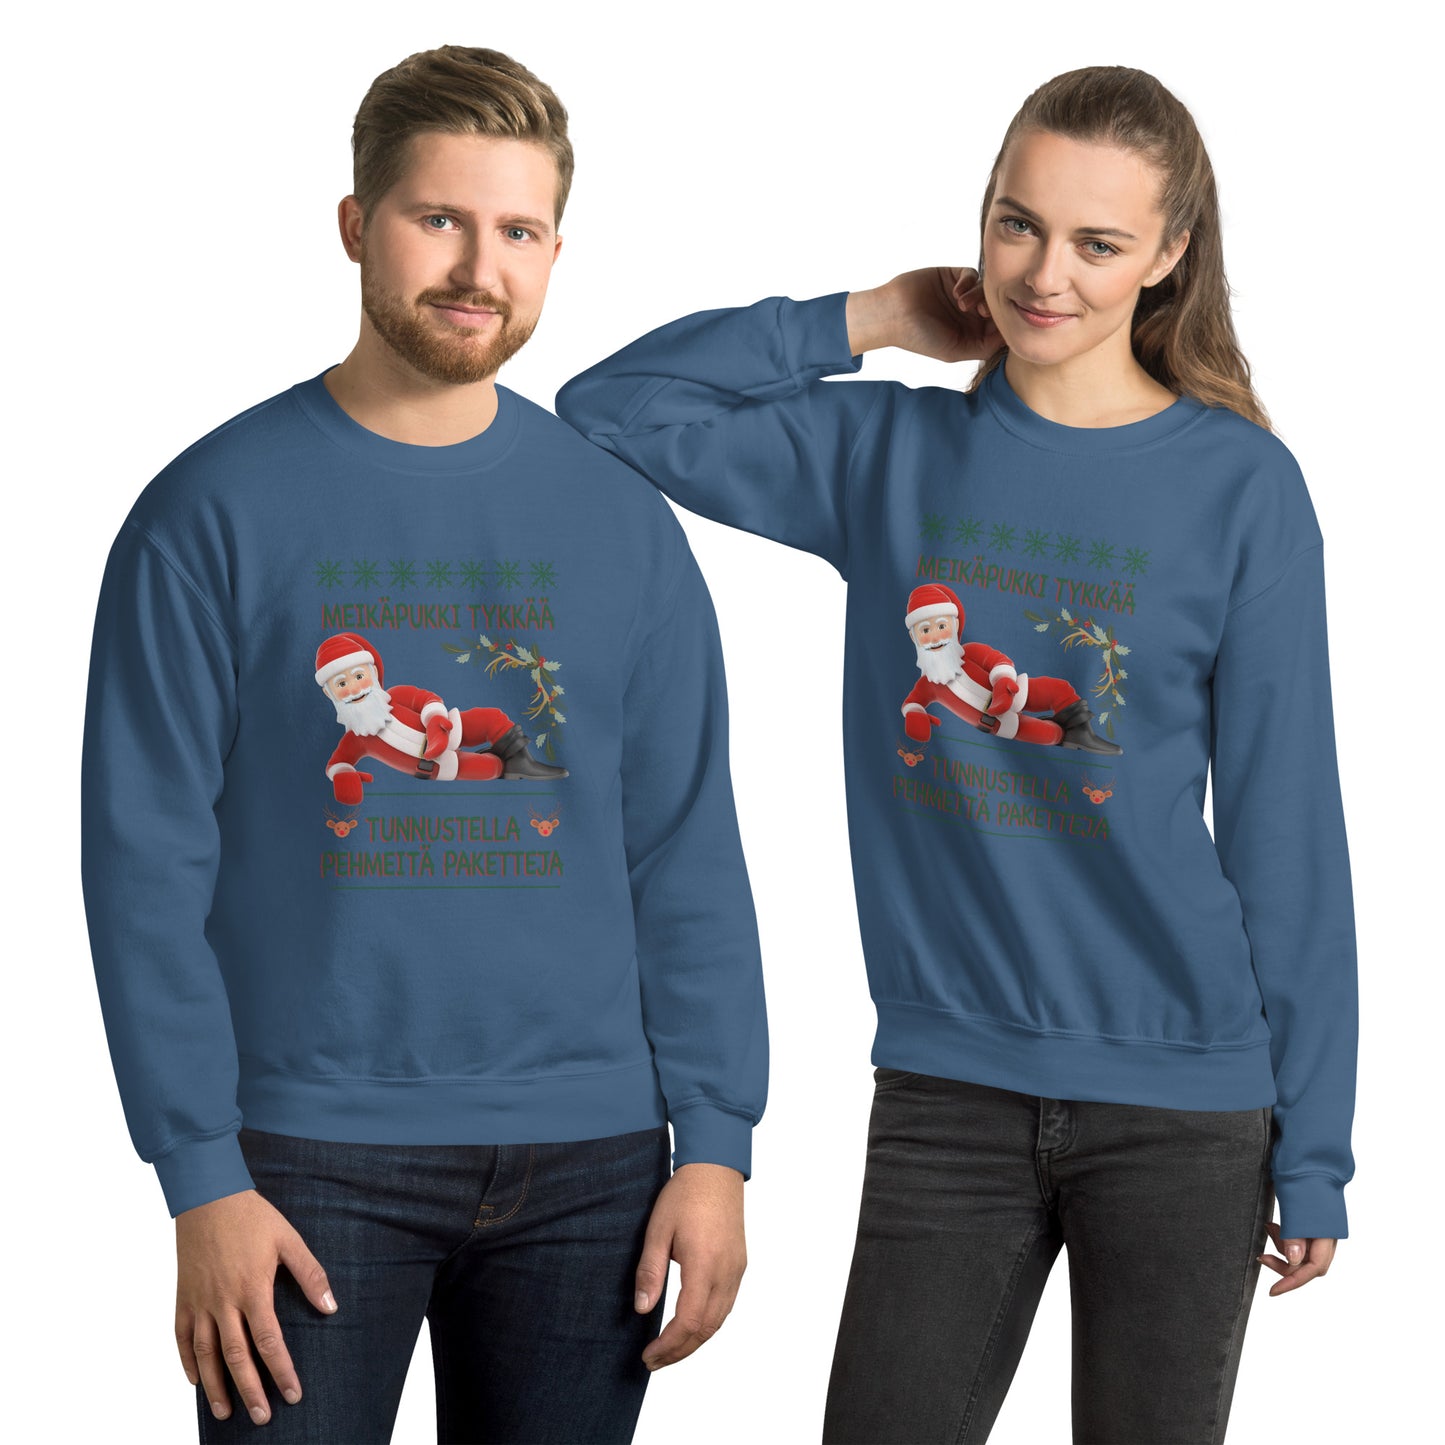 Xmas sweater - Pehmeitä paketteja